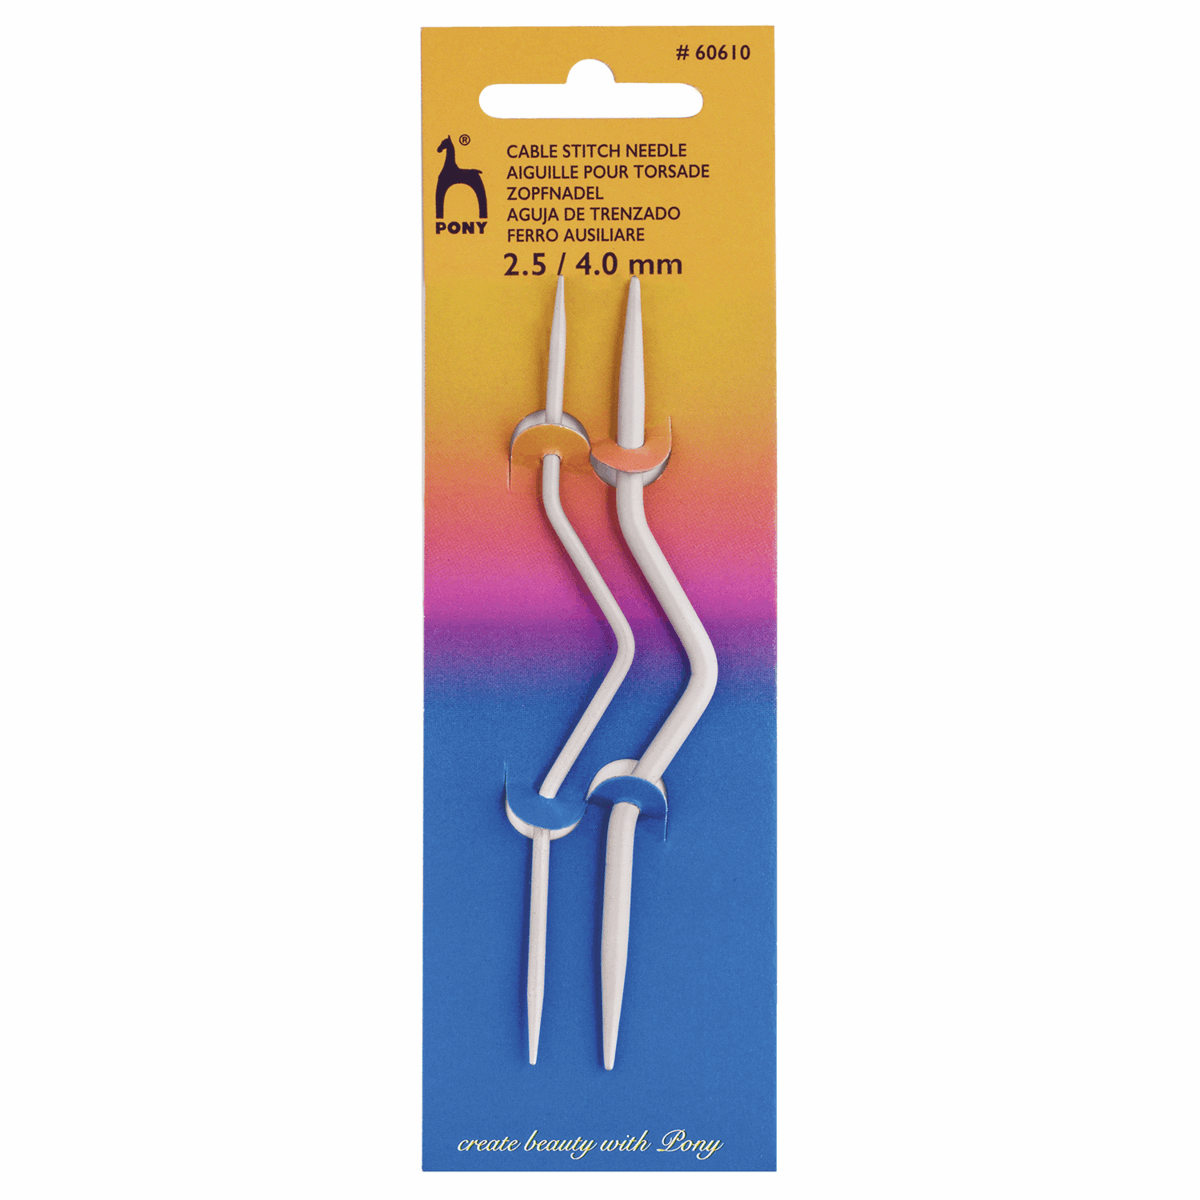 Pony Needles Pony Cable Stitch Needles (Bent) - 2.50-4.00mm 8901003606102